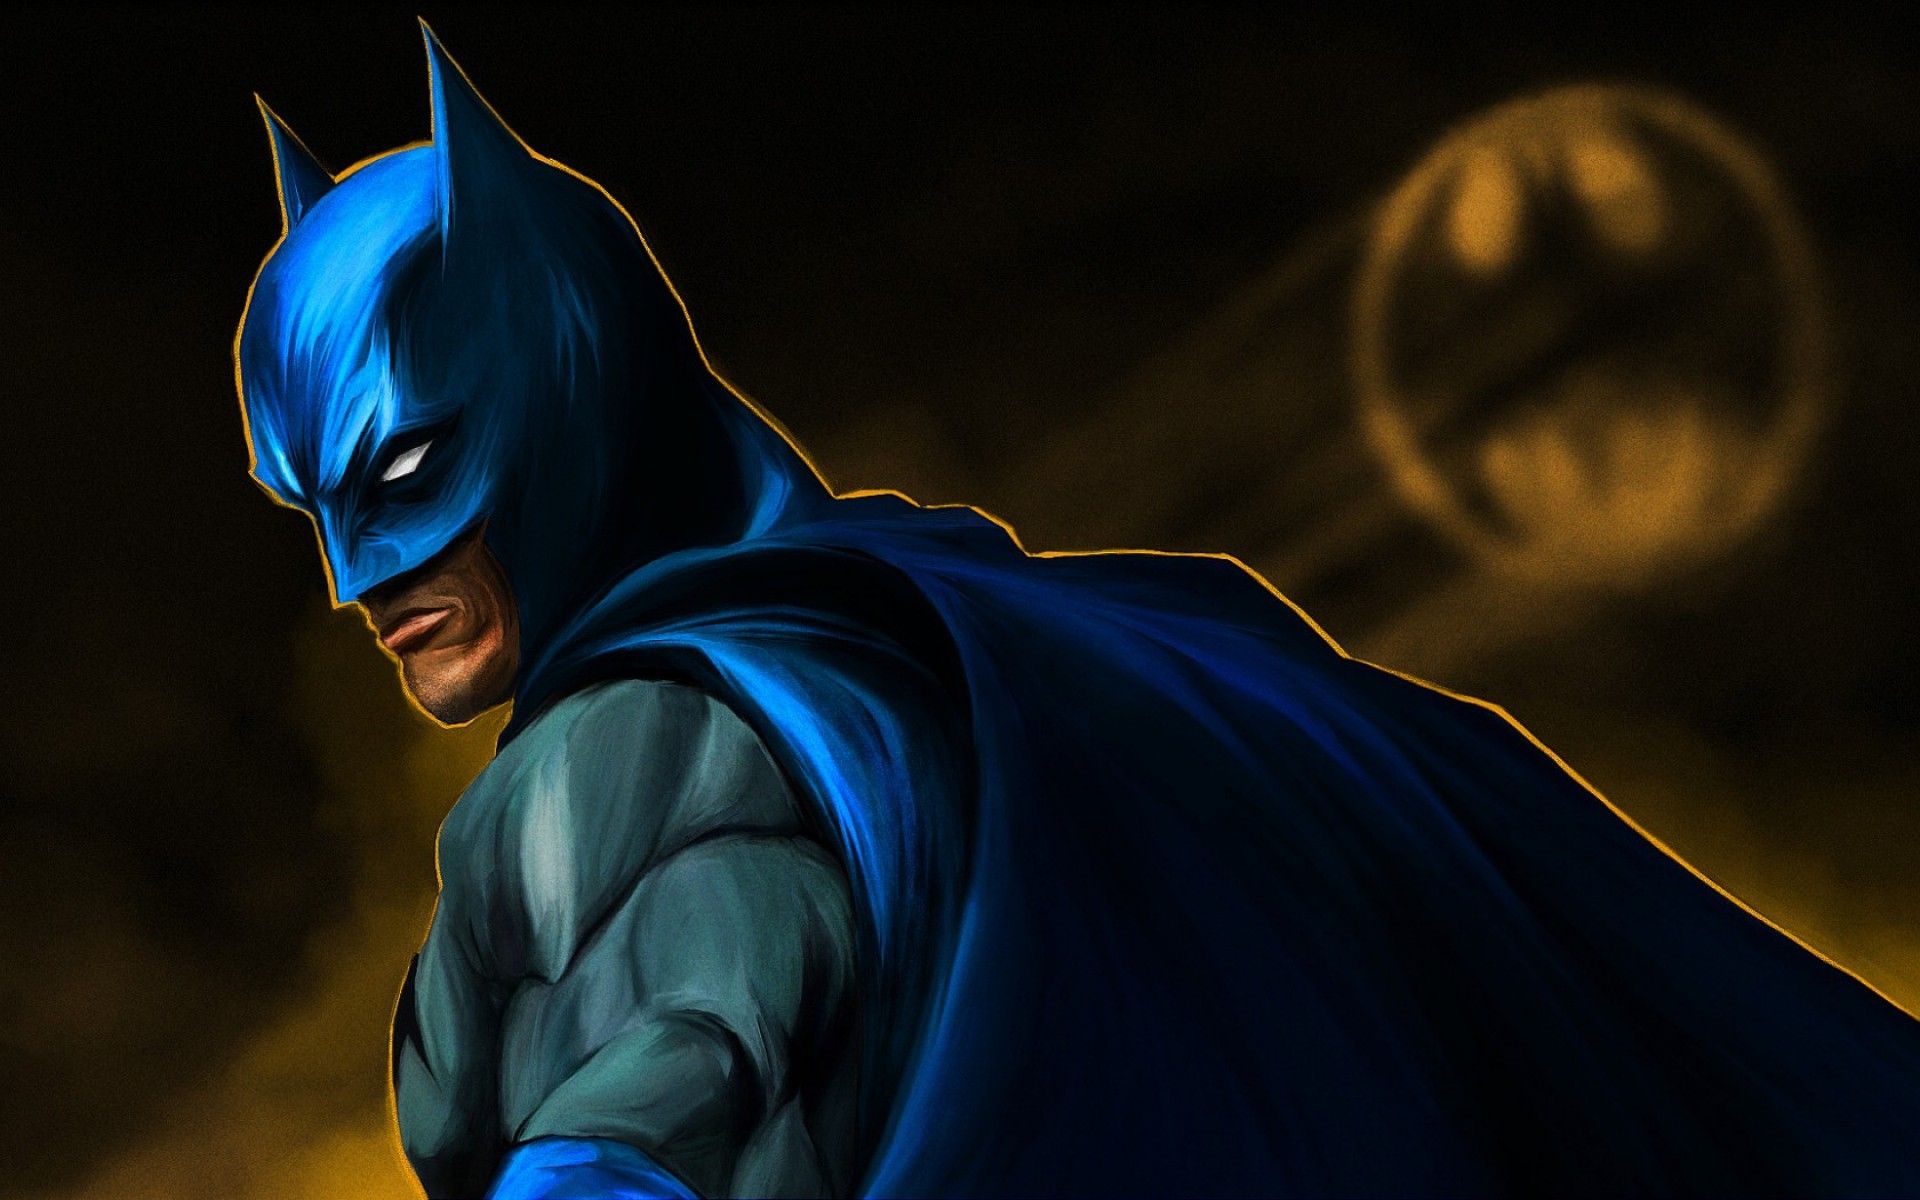 Batman, Comics, DC Comics, Superhero, Concept Art Wallpaper HD / Desktop and Mobile Background